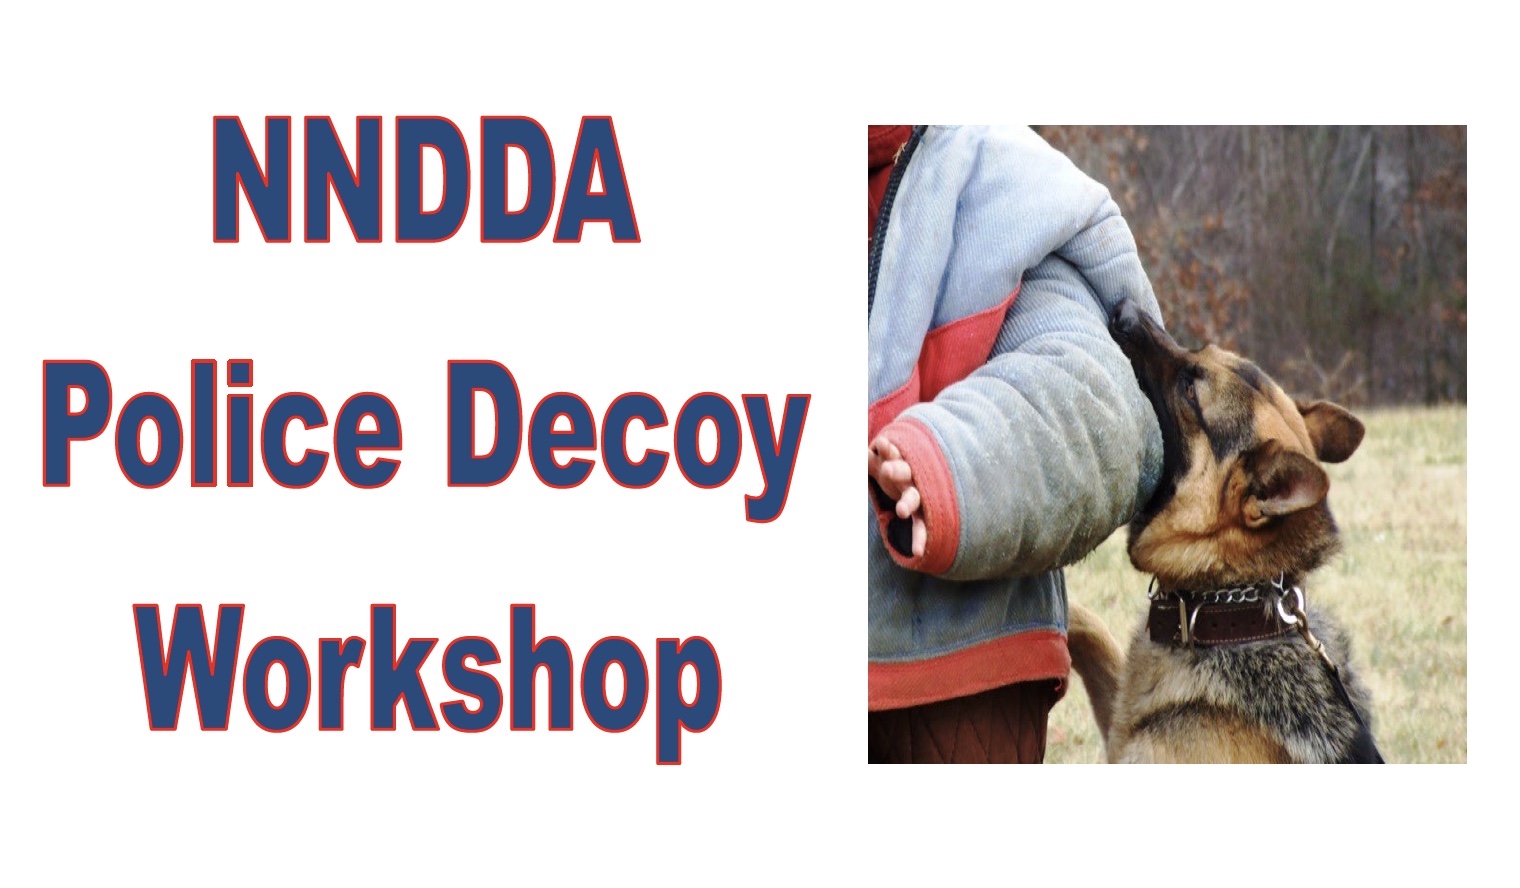 NNDDA Police Decoy Workshop